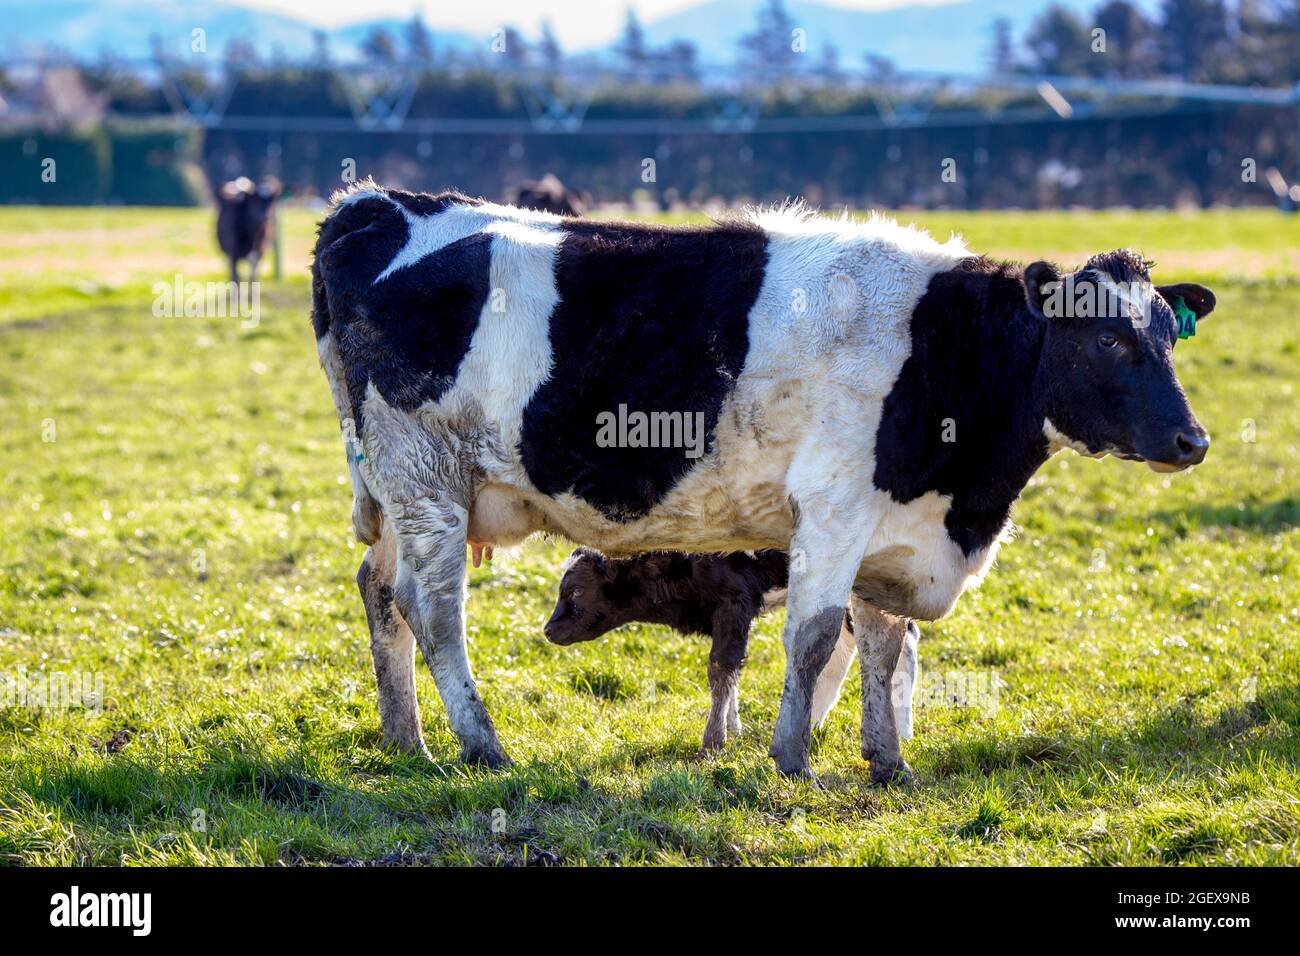 Un bebé recién nacido busca su primera bebida de calostro de su madre en un campo de vacas lecheras embarazadas, Canterbury, Nueva Zelanda Foto de stock